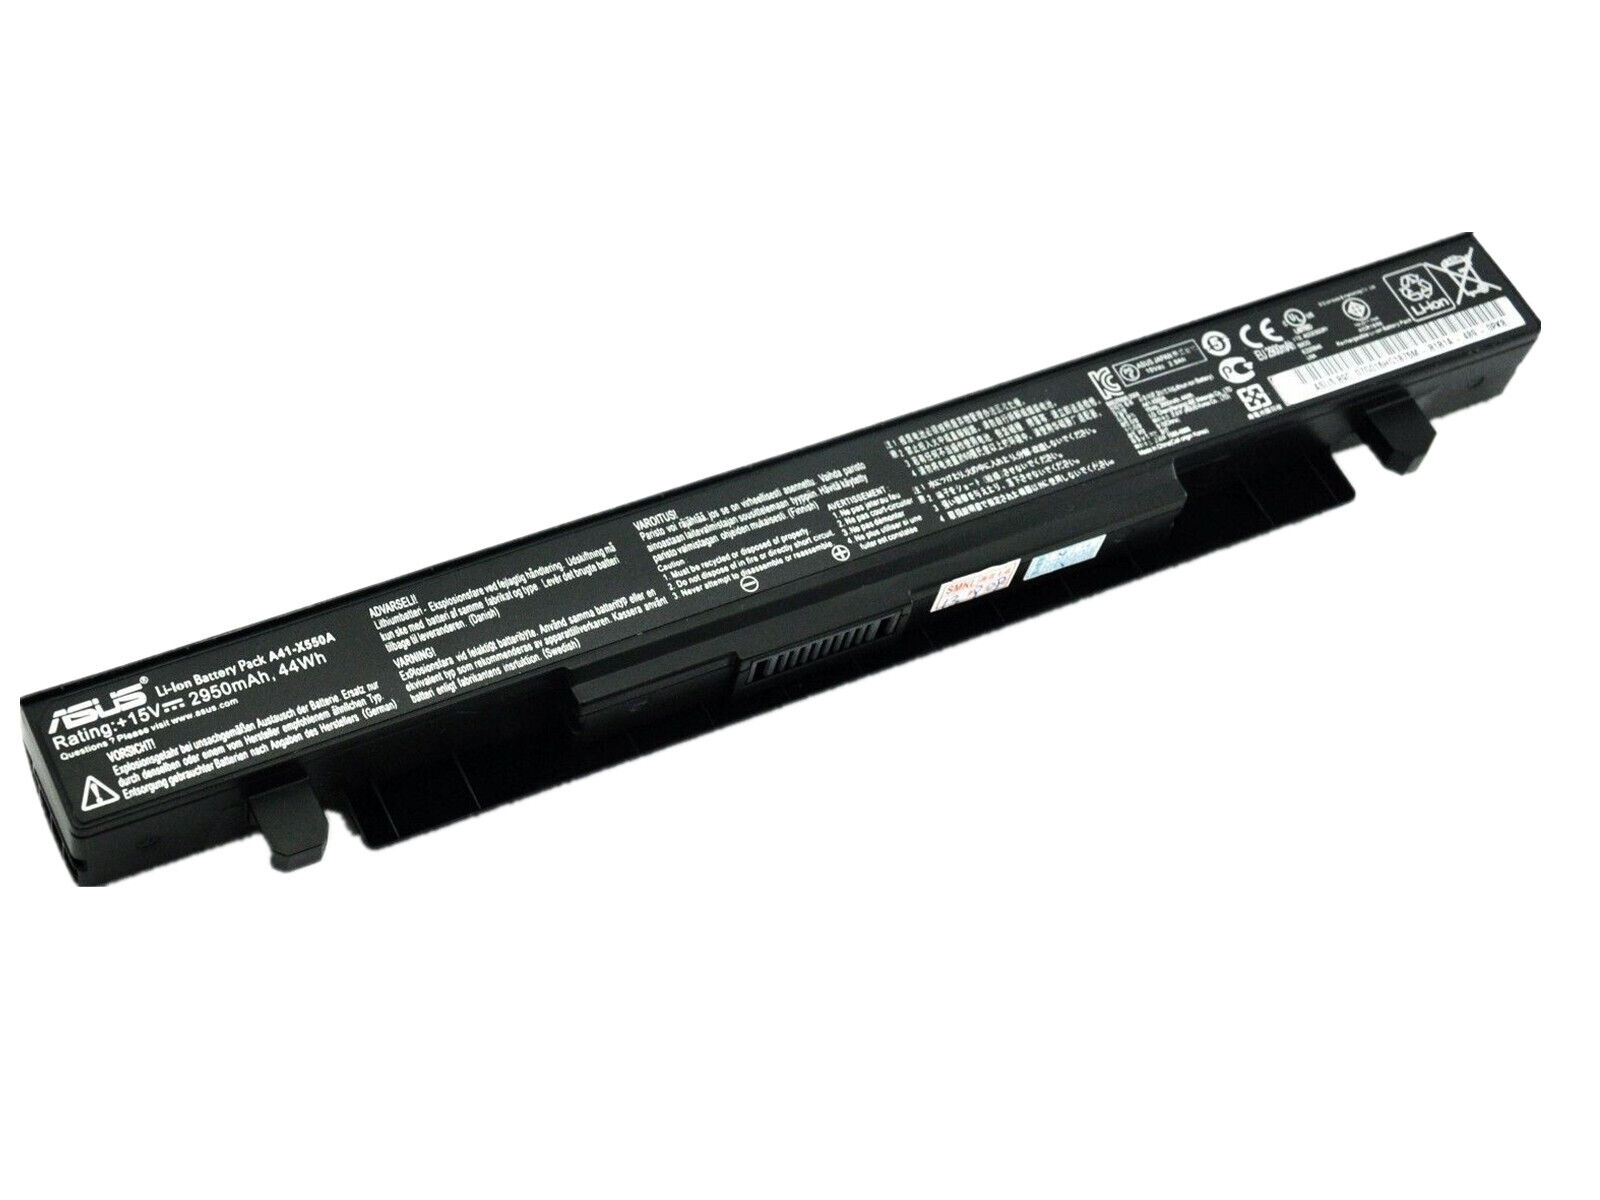 Genuine A41-X550A Battery For Asus A550 X550 X550C F552 K450 K550 P450 P550 R409